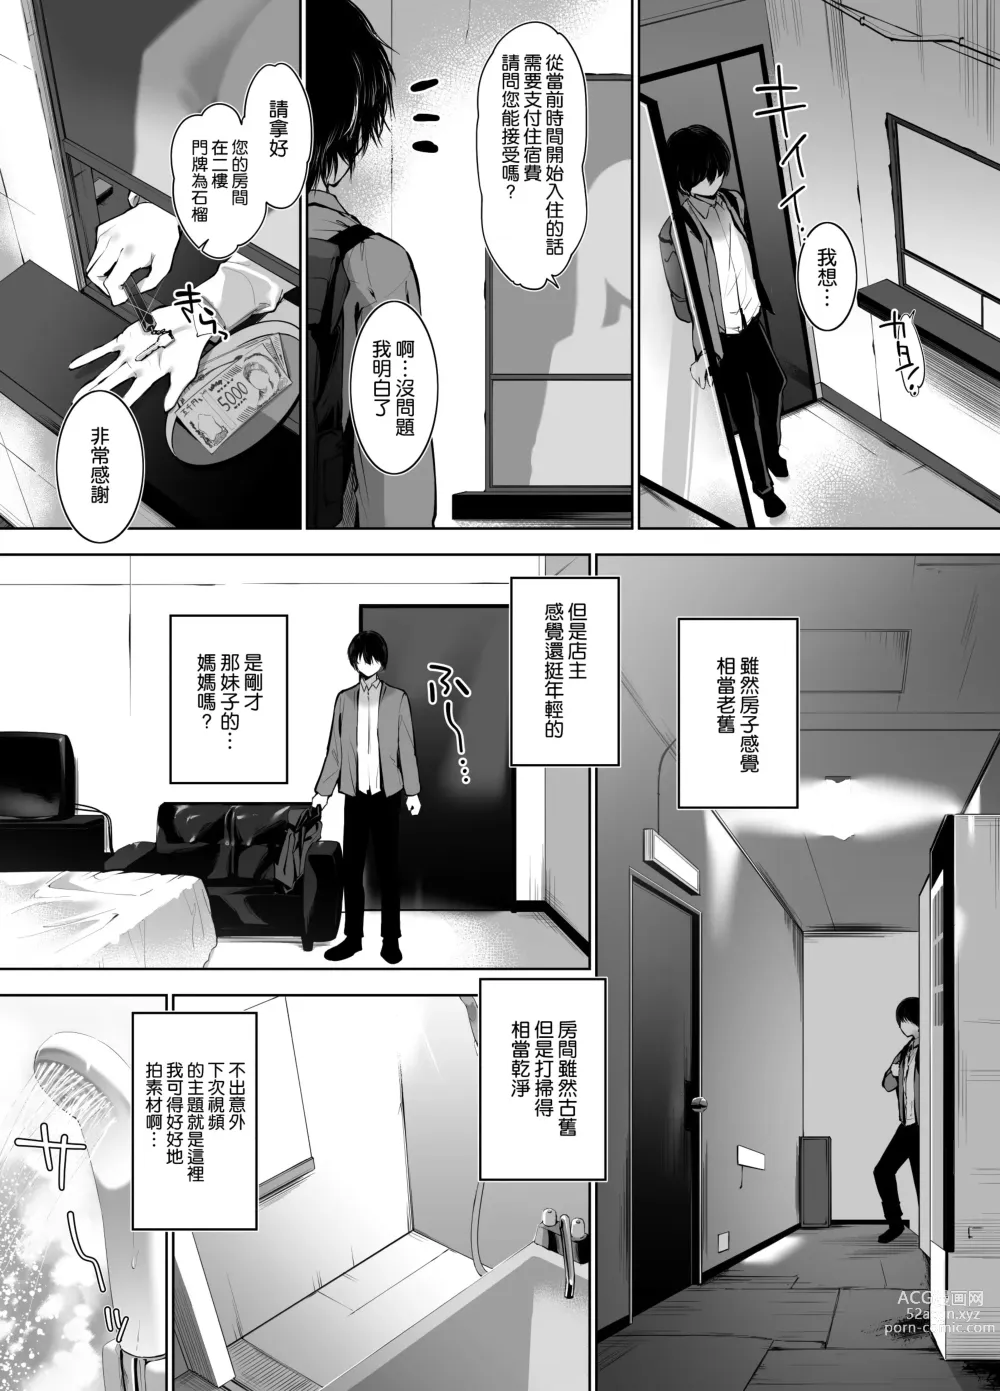 Page 9 of doujinshi 美人母娘が経営するドライブインの秘密のおもてなしが過激すぎる